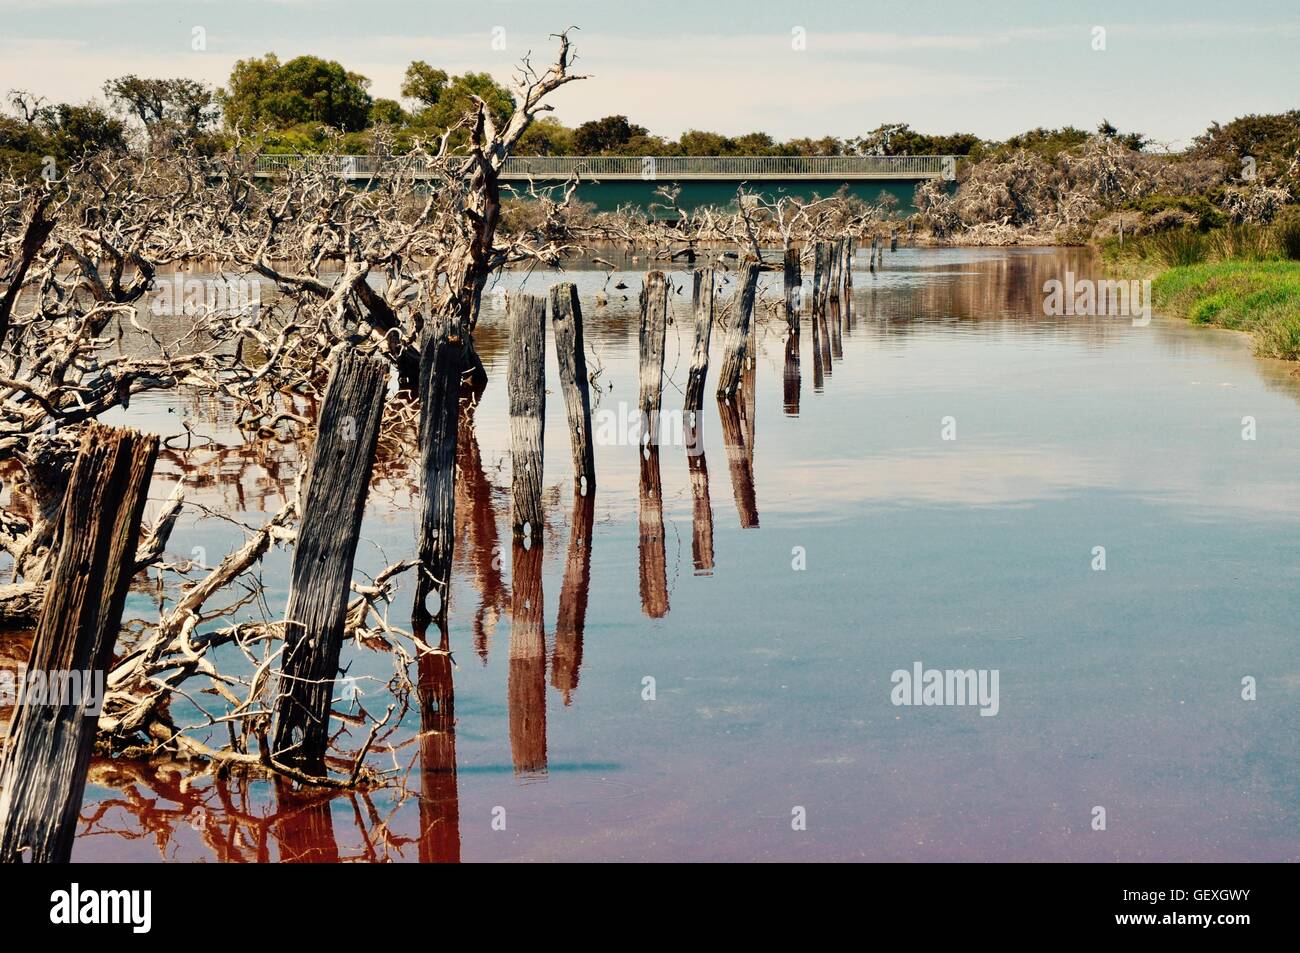 Poteaux de bois au lac Coogee zones humides dans la diminution de la perspective avec passerelle pour piétons à Munster, l'ouest de l'Australie. Banque D'Images